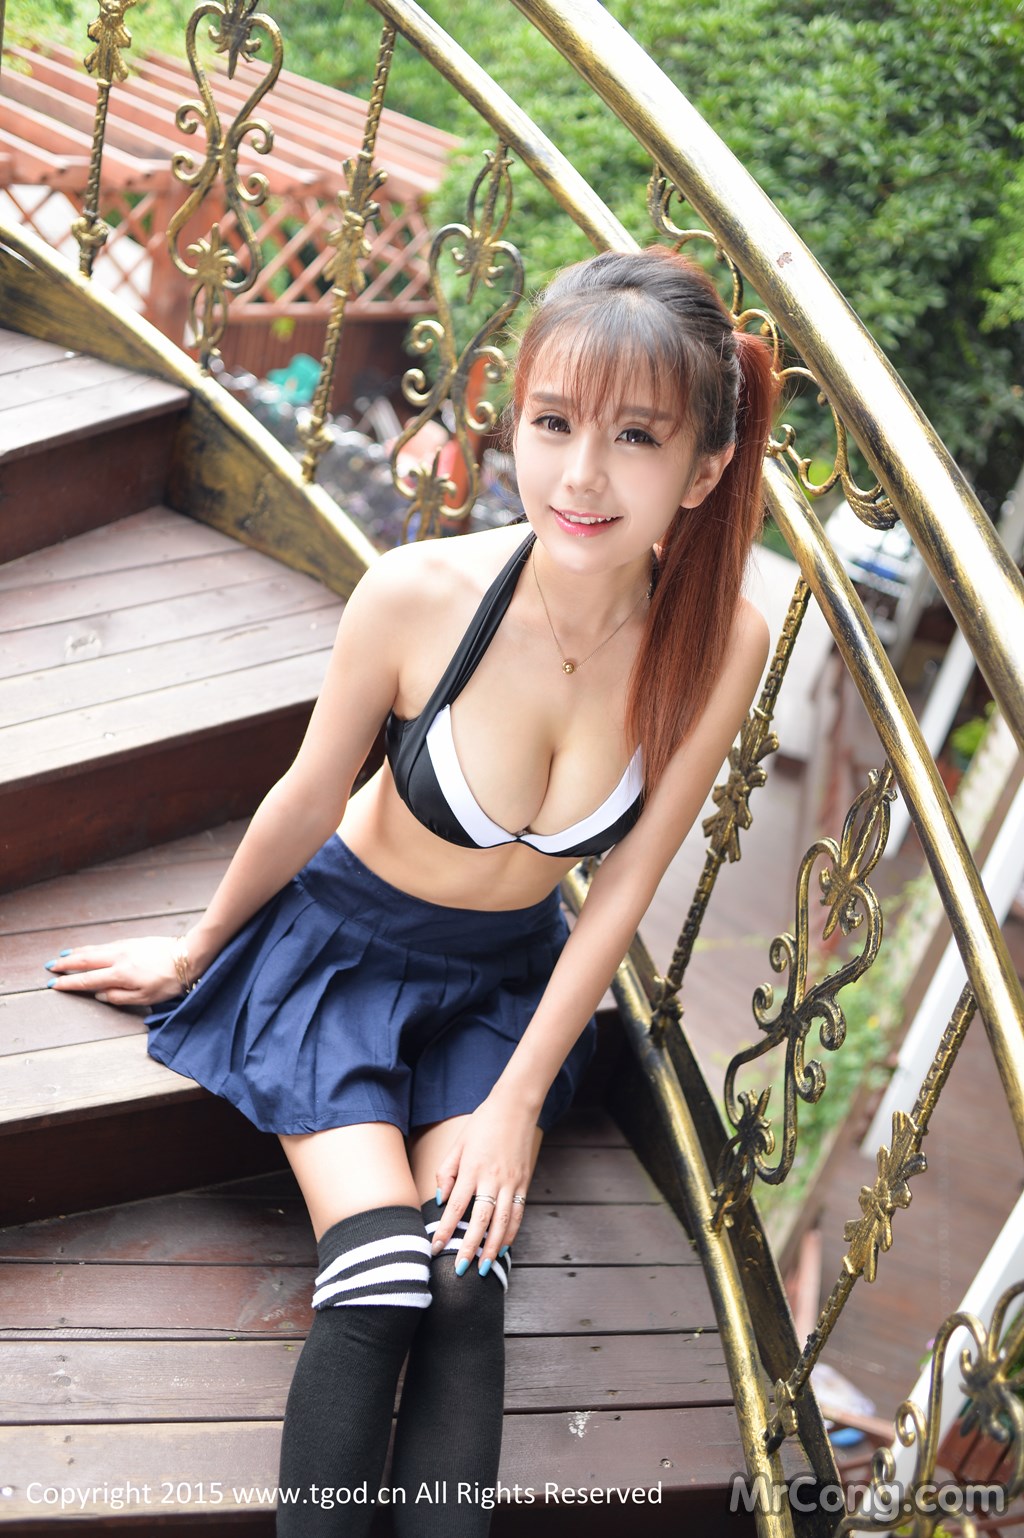 TGOD 2015-07-08: Model Xiao Jiu Vin (小 九 Vin) (42 photos) photo 2-6